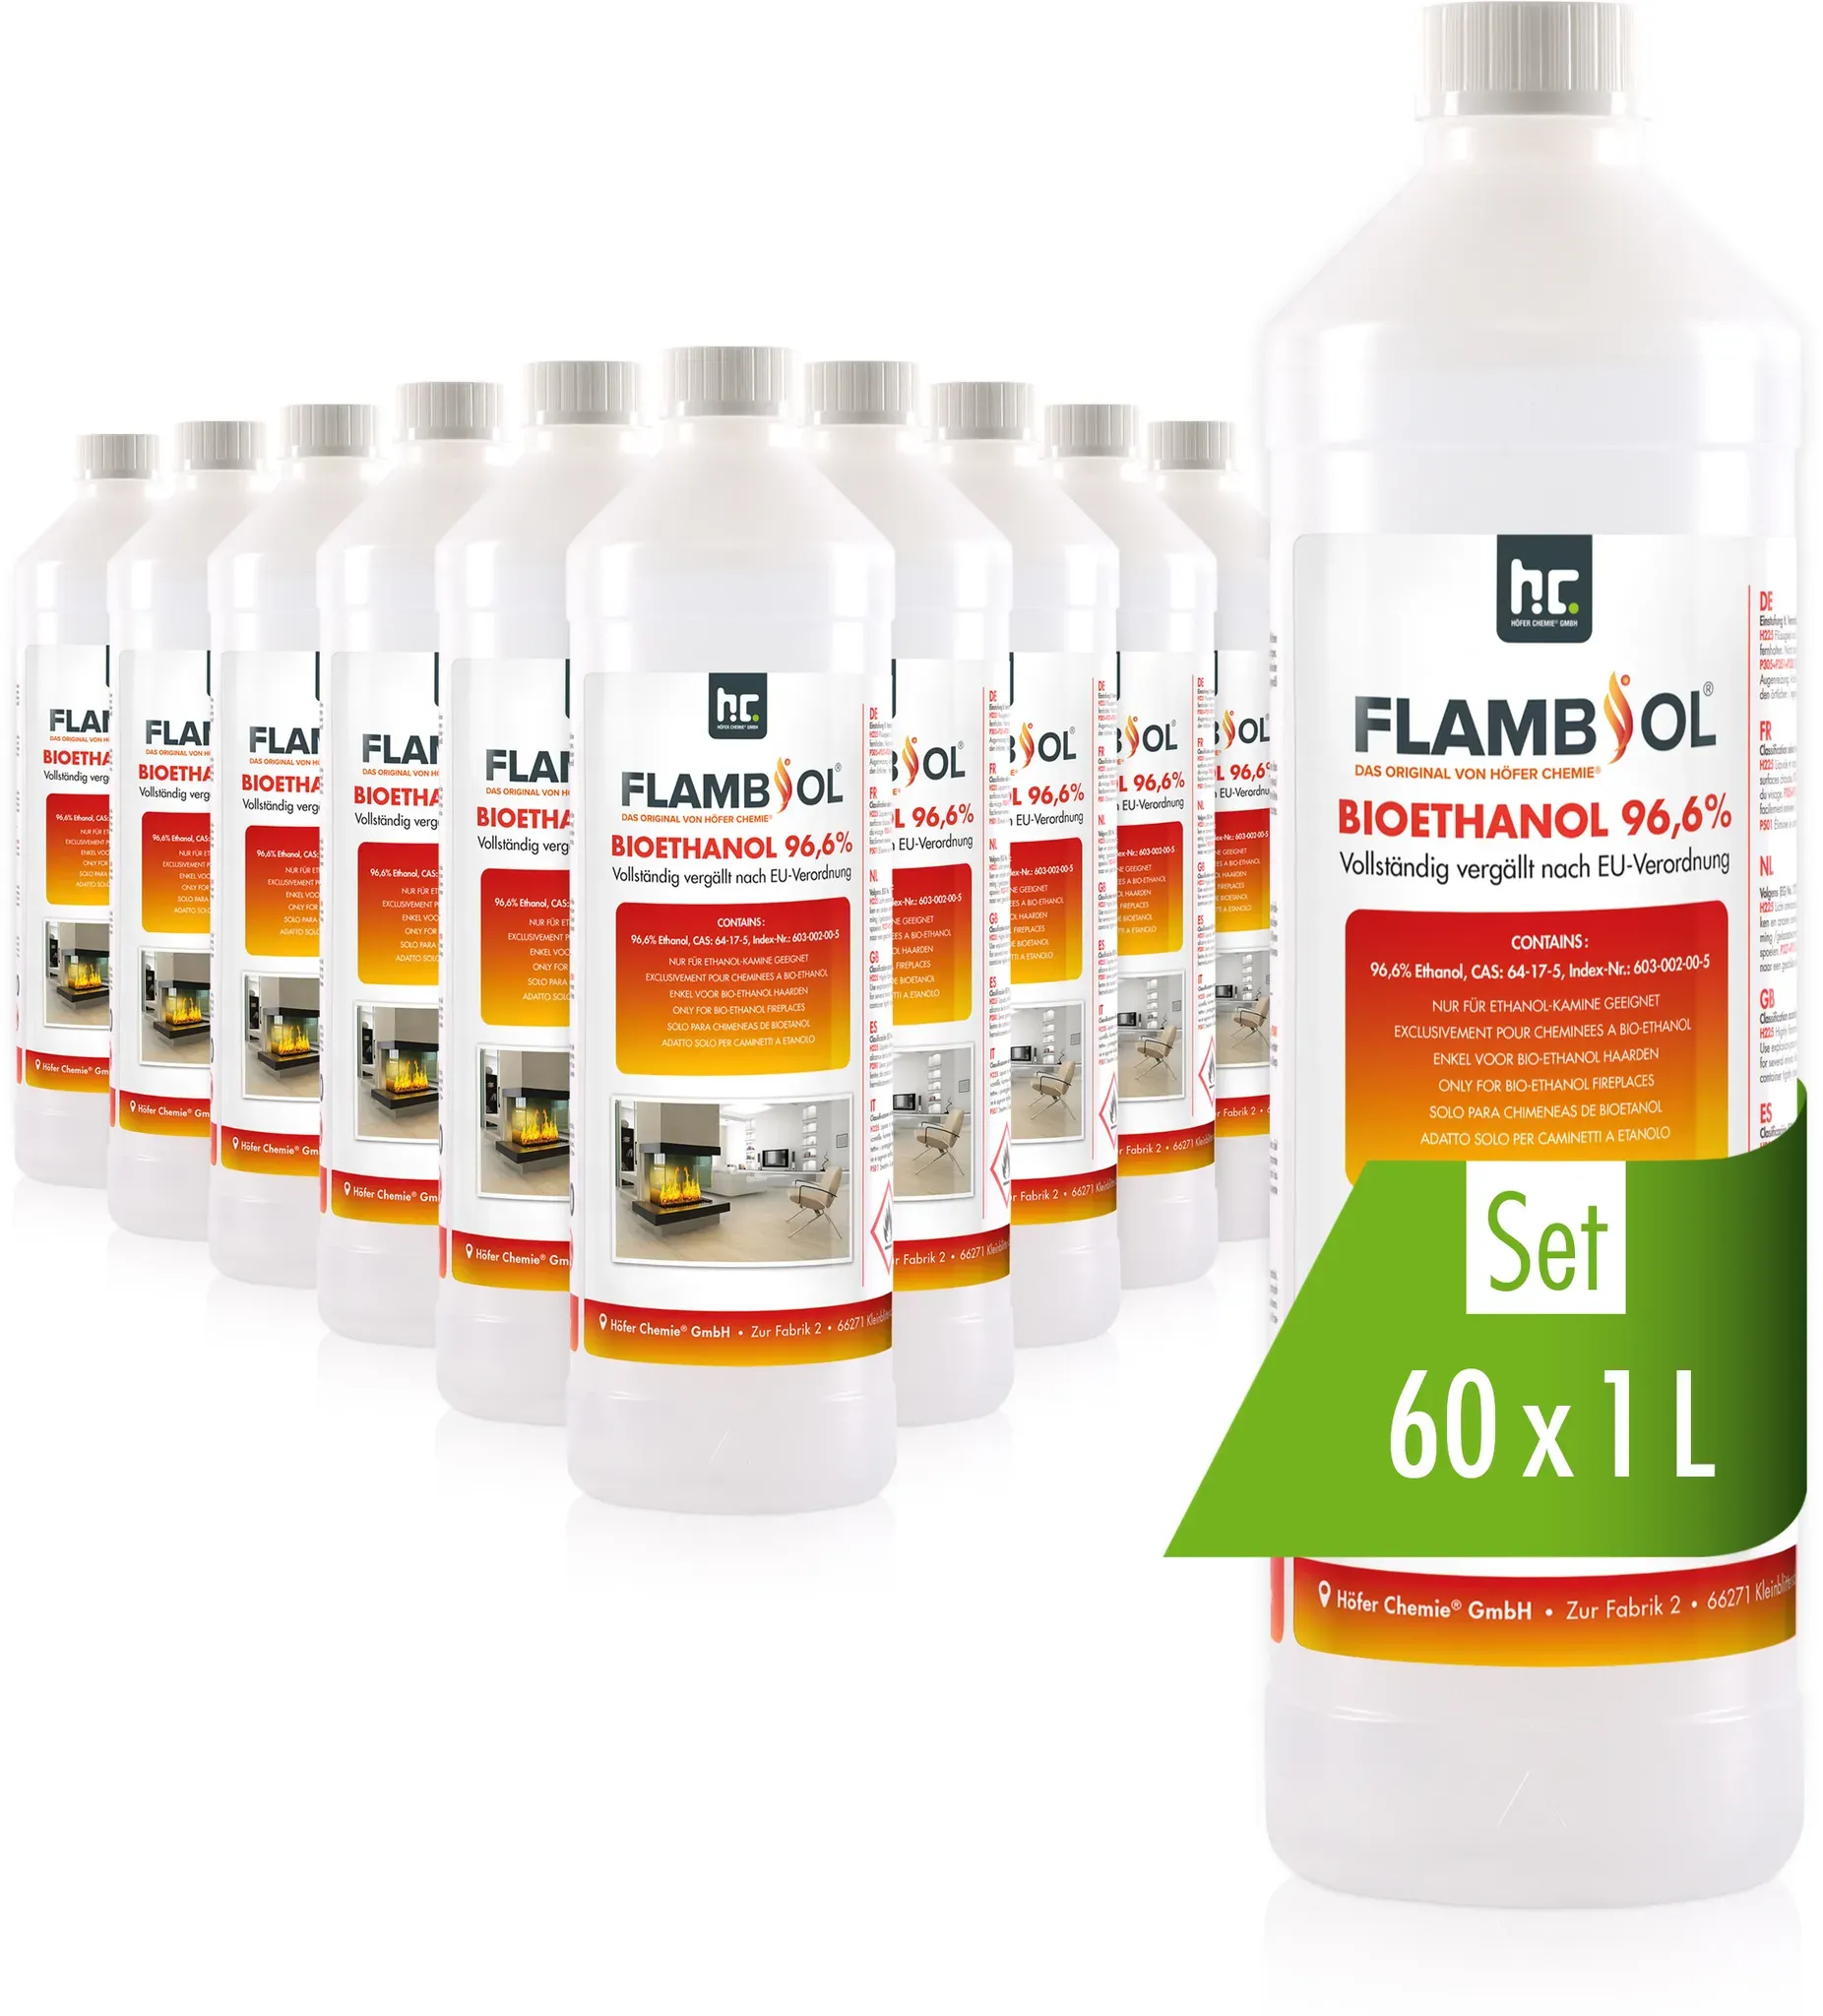 60 x 1 L FLAMBIOL® Bioéthanol 96,6% Premium (en bouteille) pour cheminée de tabl...